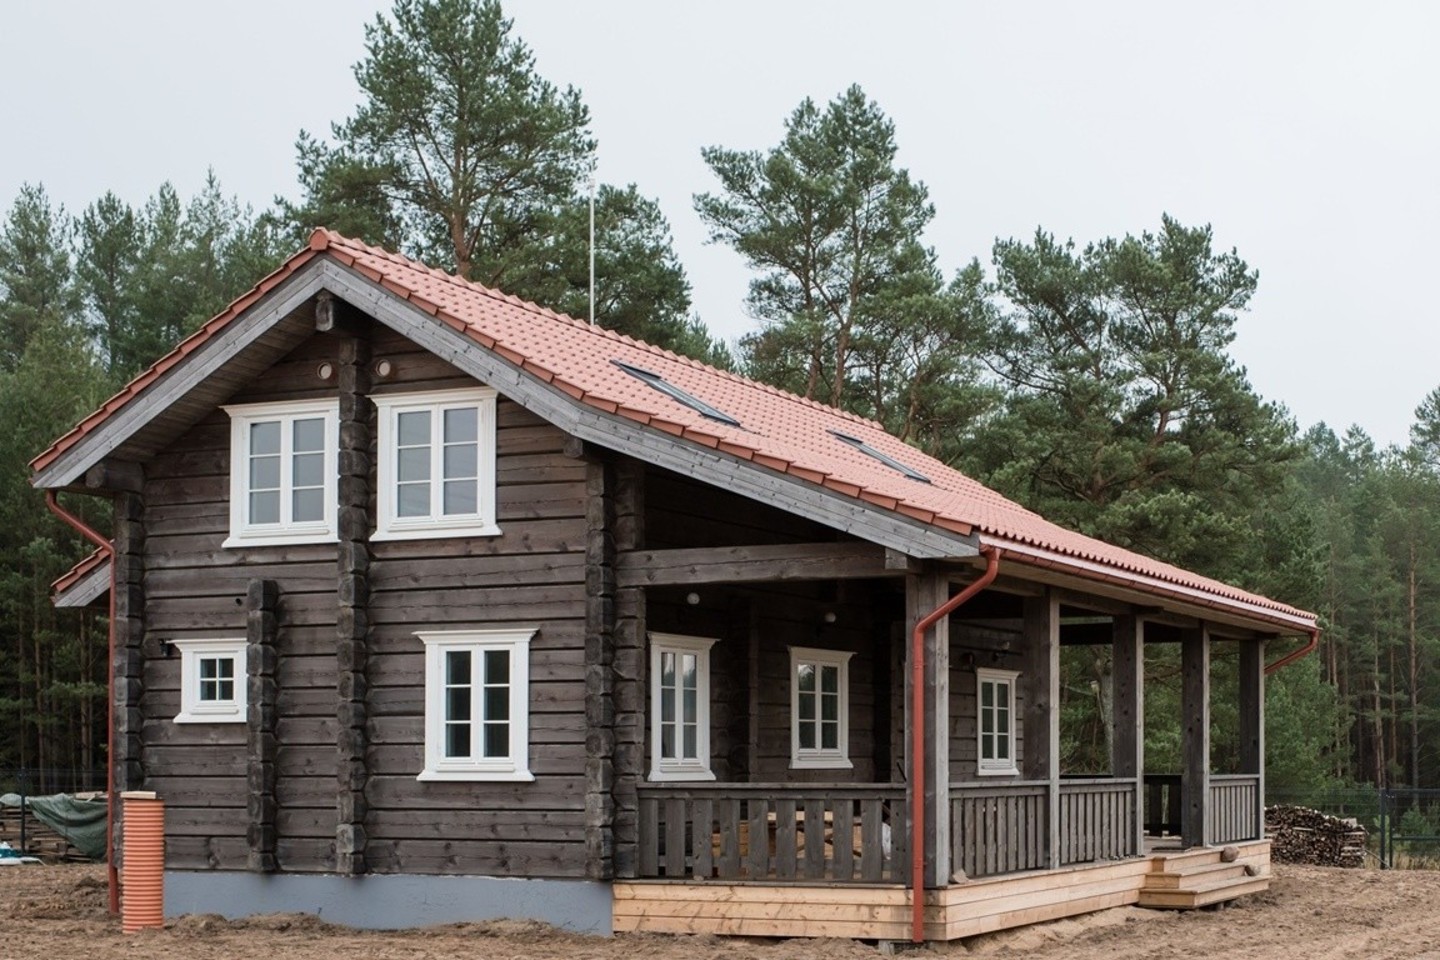 Šiandien lietuvių gaminamuose namuose ilsisi turtingiausios norvegų šeimos.<br> „LHM“ nuotr.